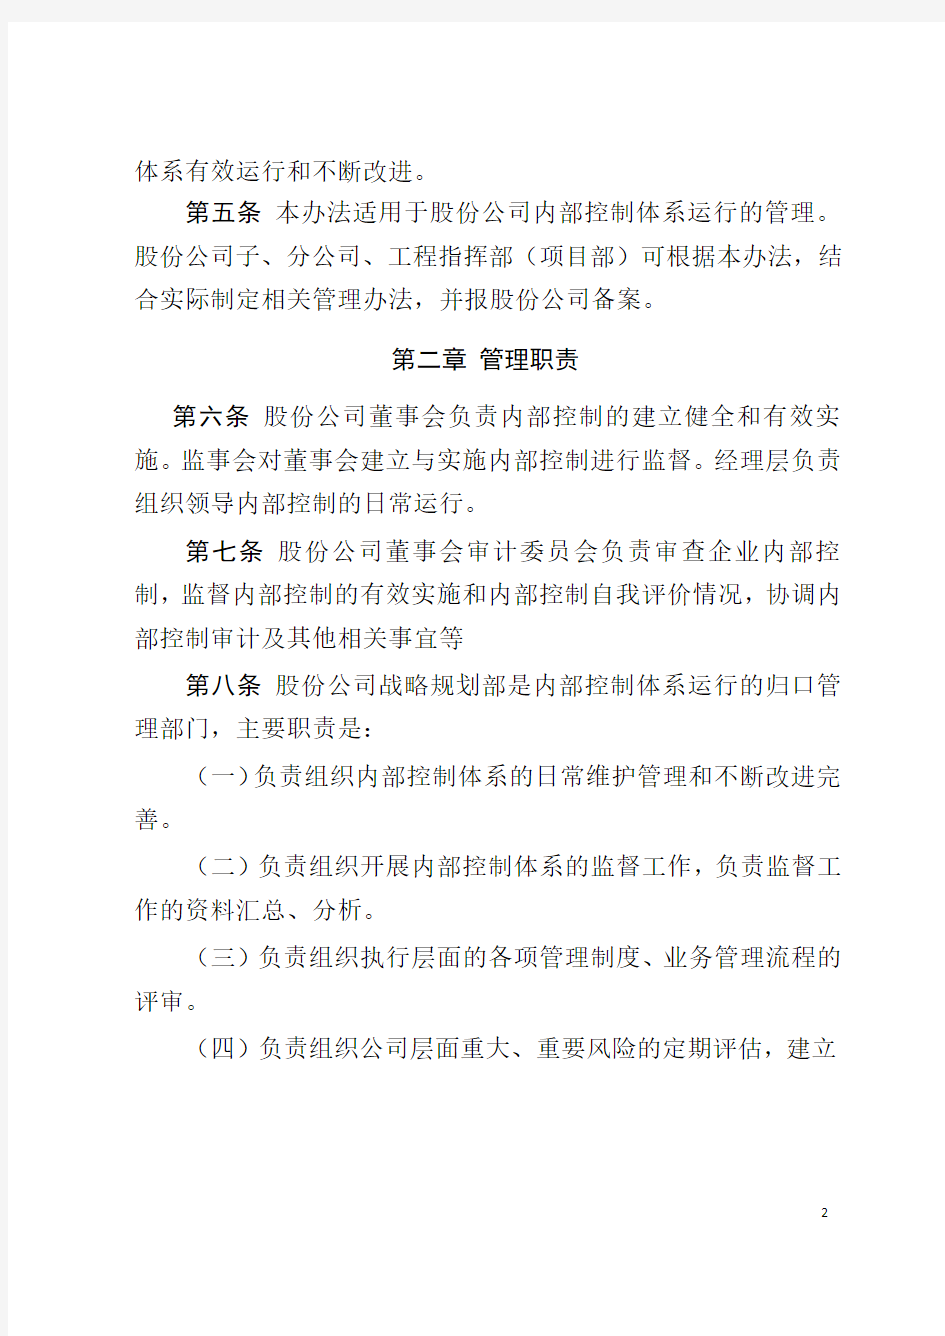 中国中铁股份有限公司内部控制运行管理办法(试行)